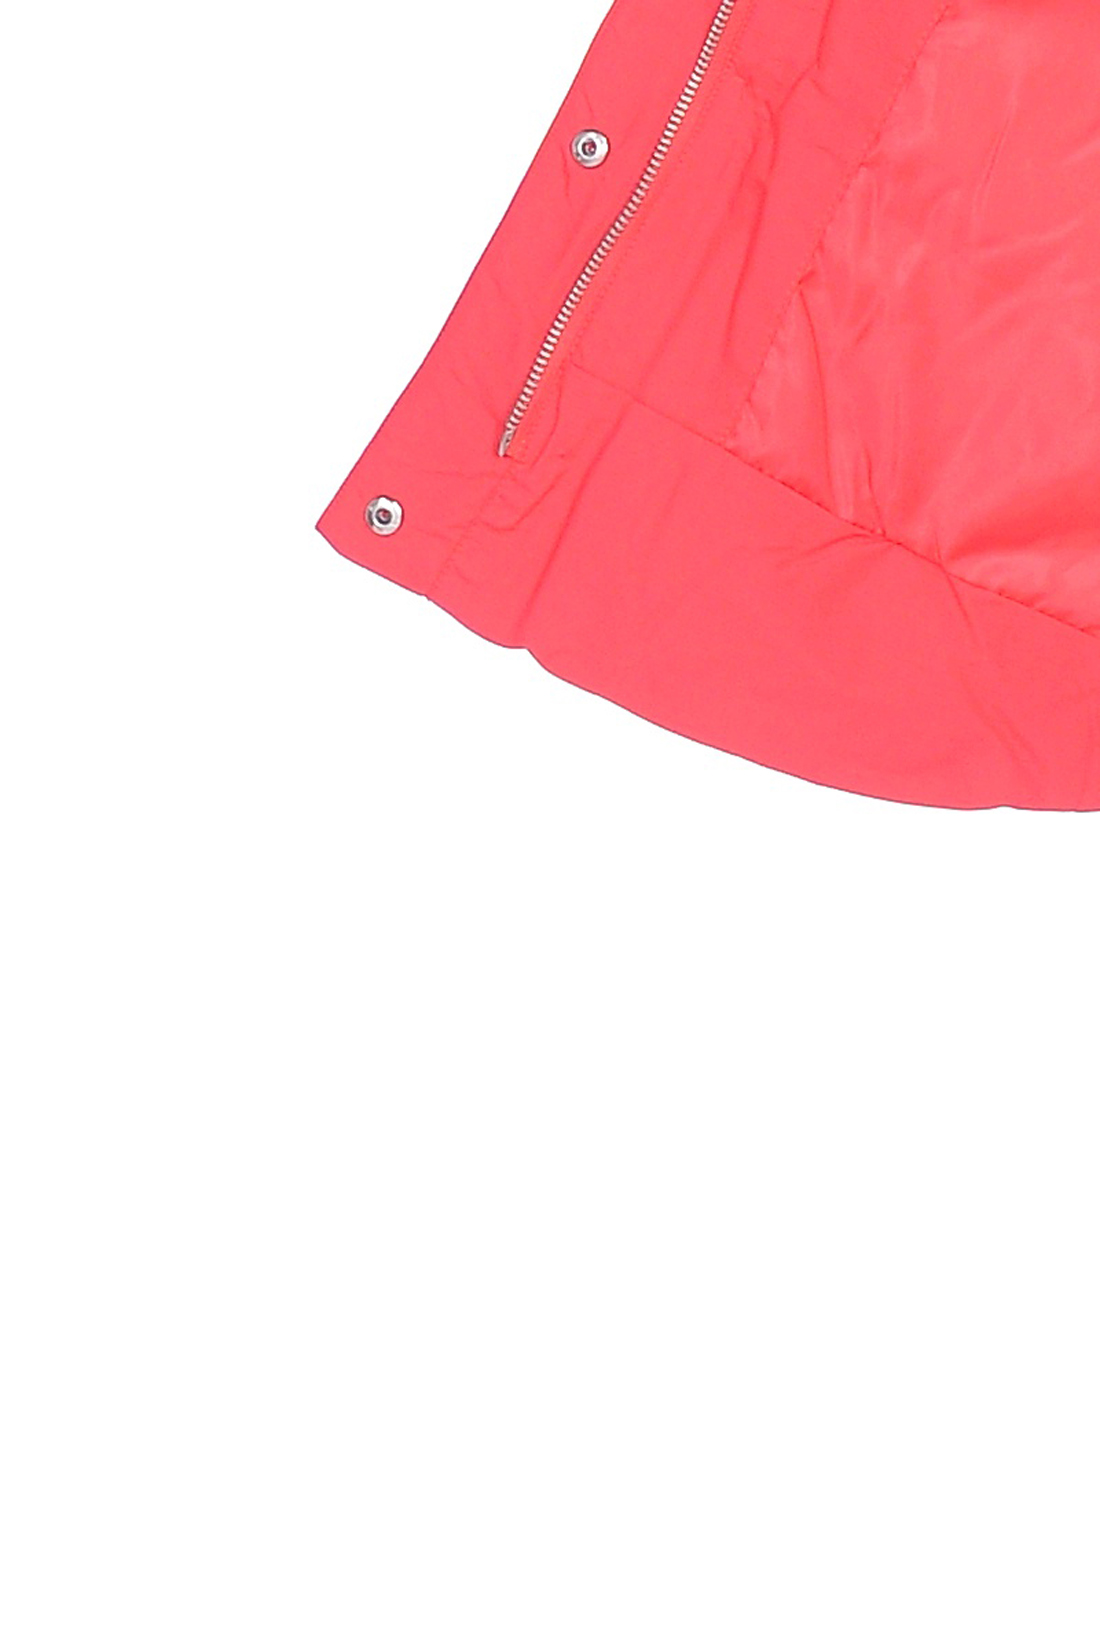 Куртка-трапеция с капюшоном (арт. baon B039047), размер L, цвет красный Куртка-трапеция с капюшоном (арт. baon B039047) - фото 4